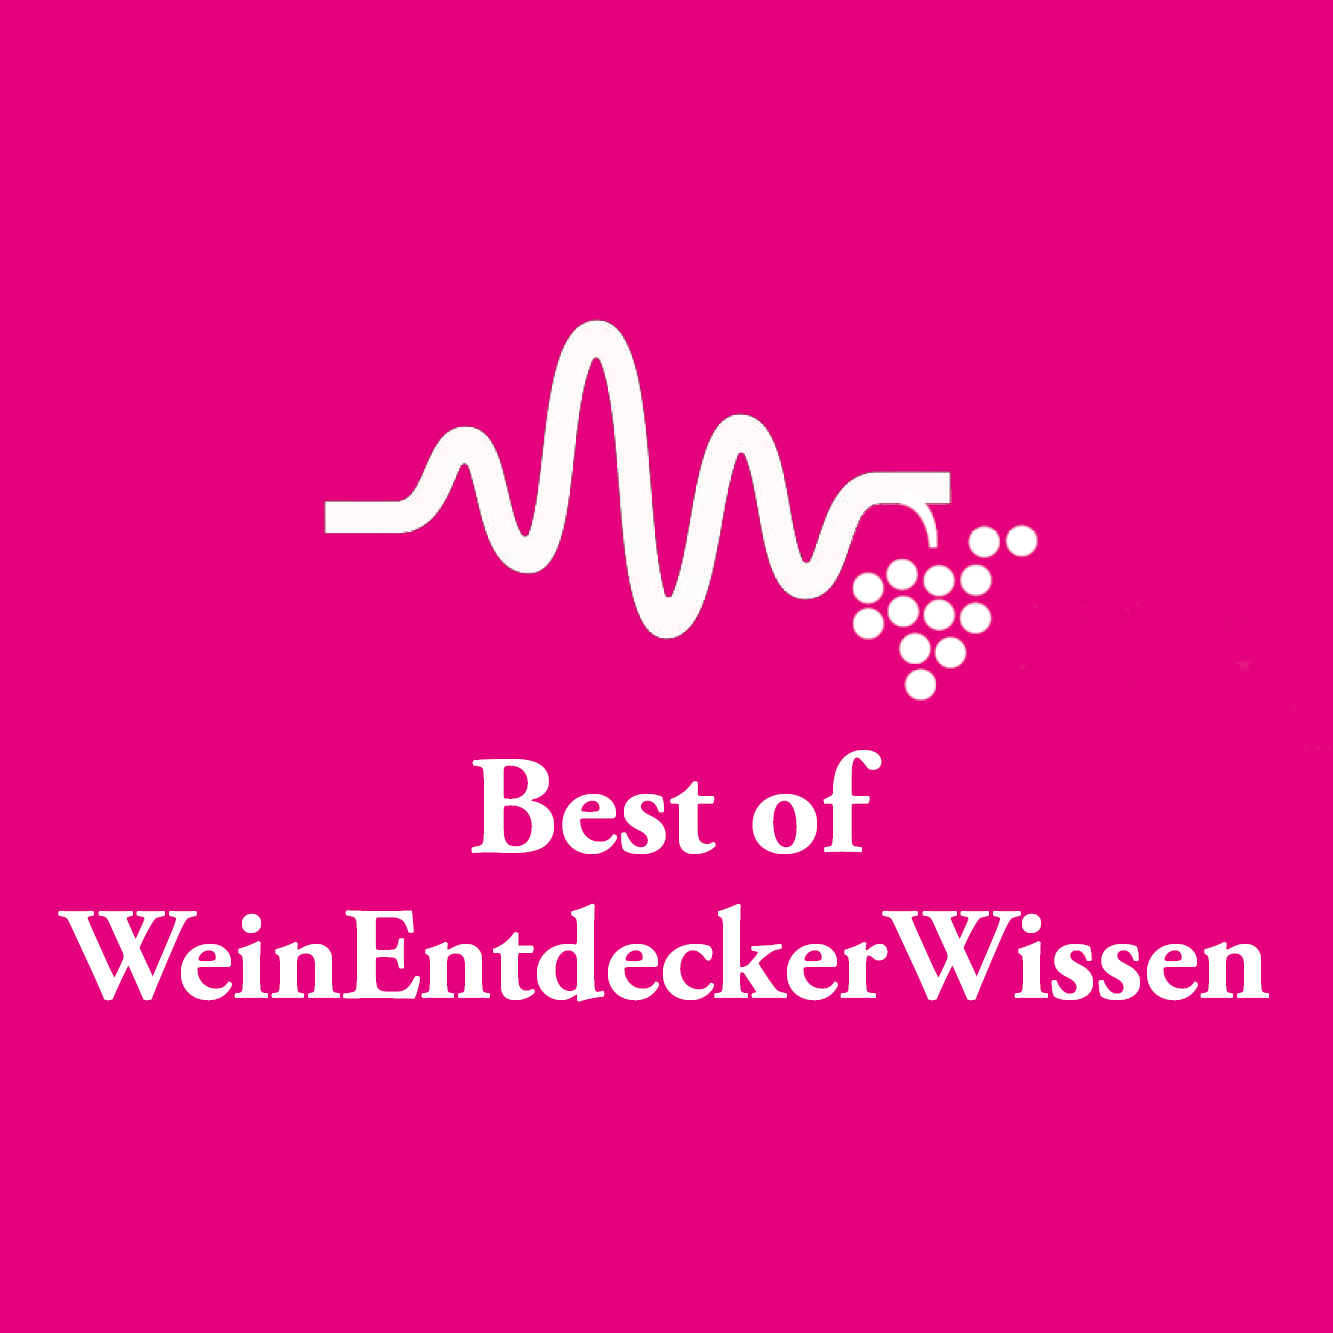 Best of WeinEntdeckerWissen